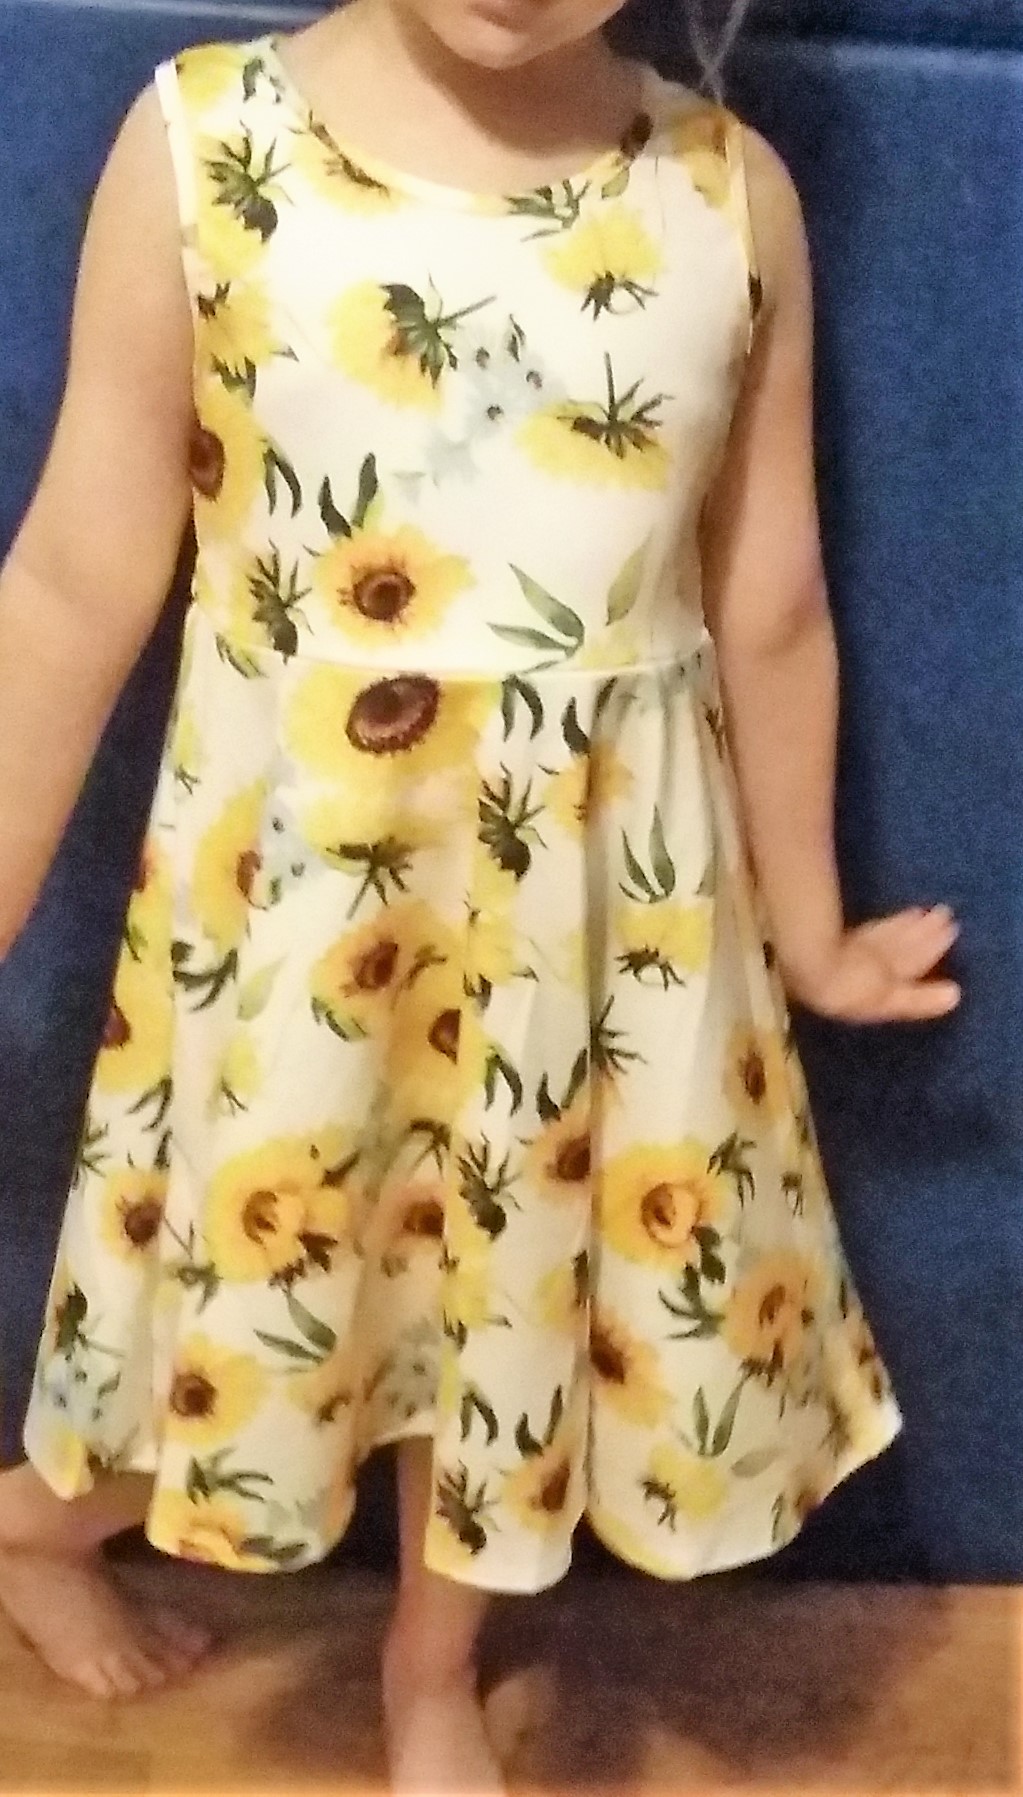 Stunning sunflower dress